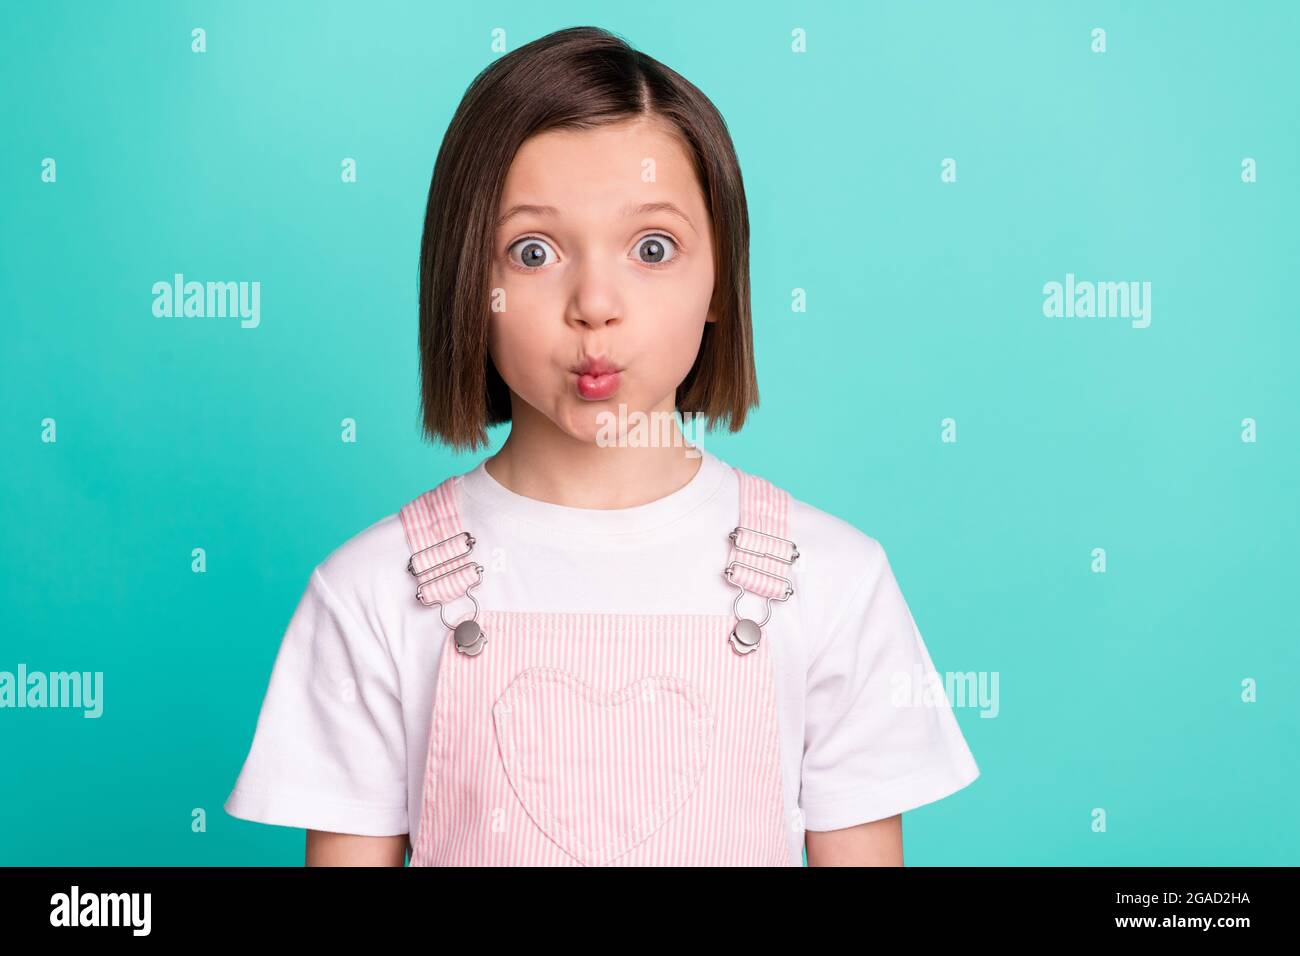 Photo de drôle funky heureuse petite fille envoyer air baiser visage gai isolé sur pastel teal couleur fond Banque D'Images